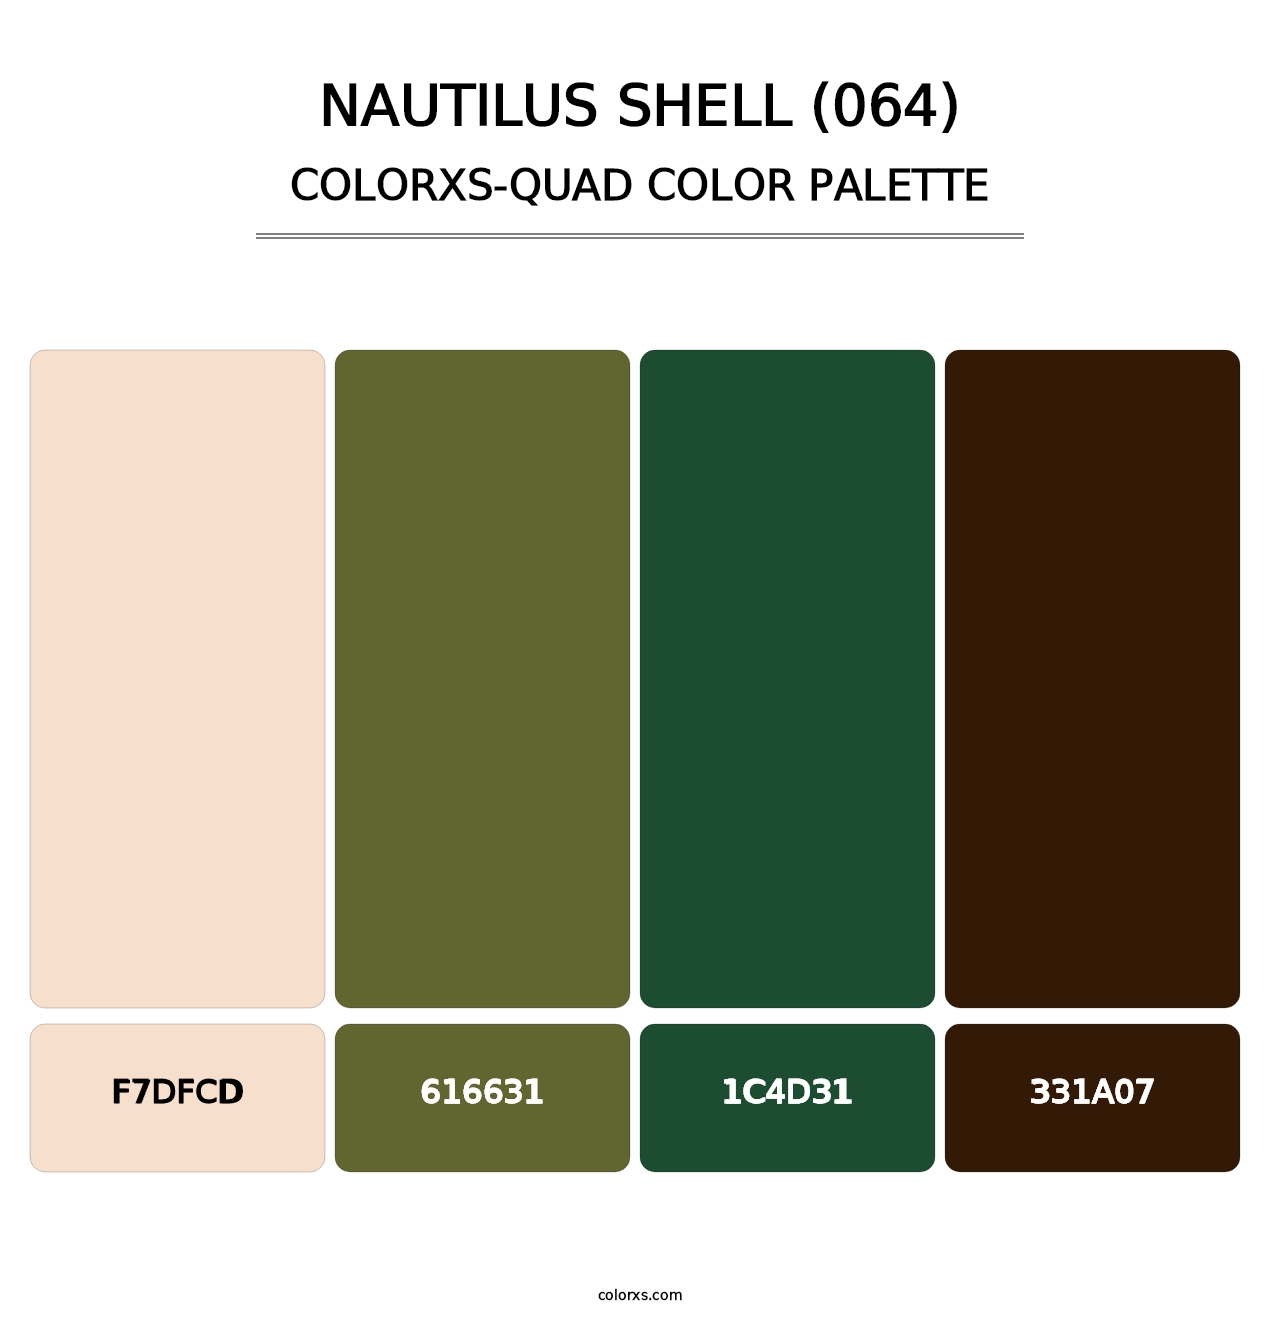 Nautilus Shell (064) - Colorxs Quad Palette